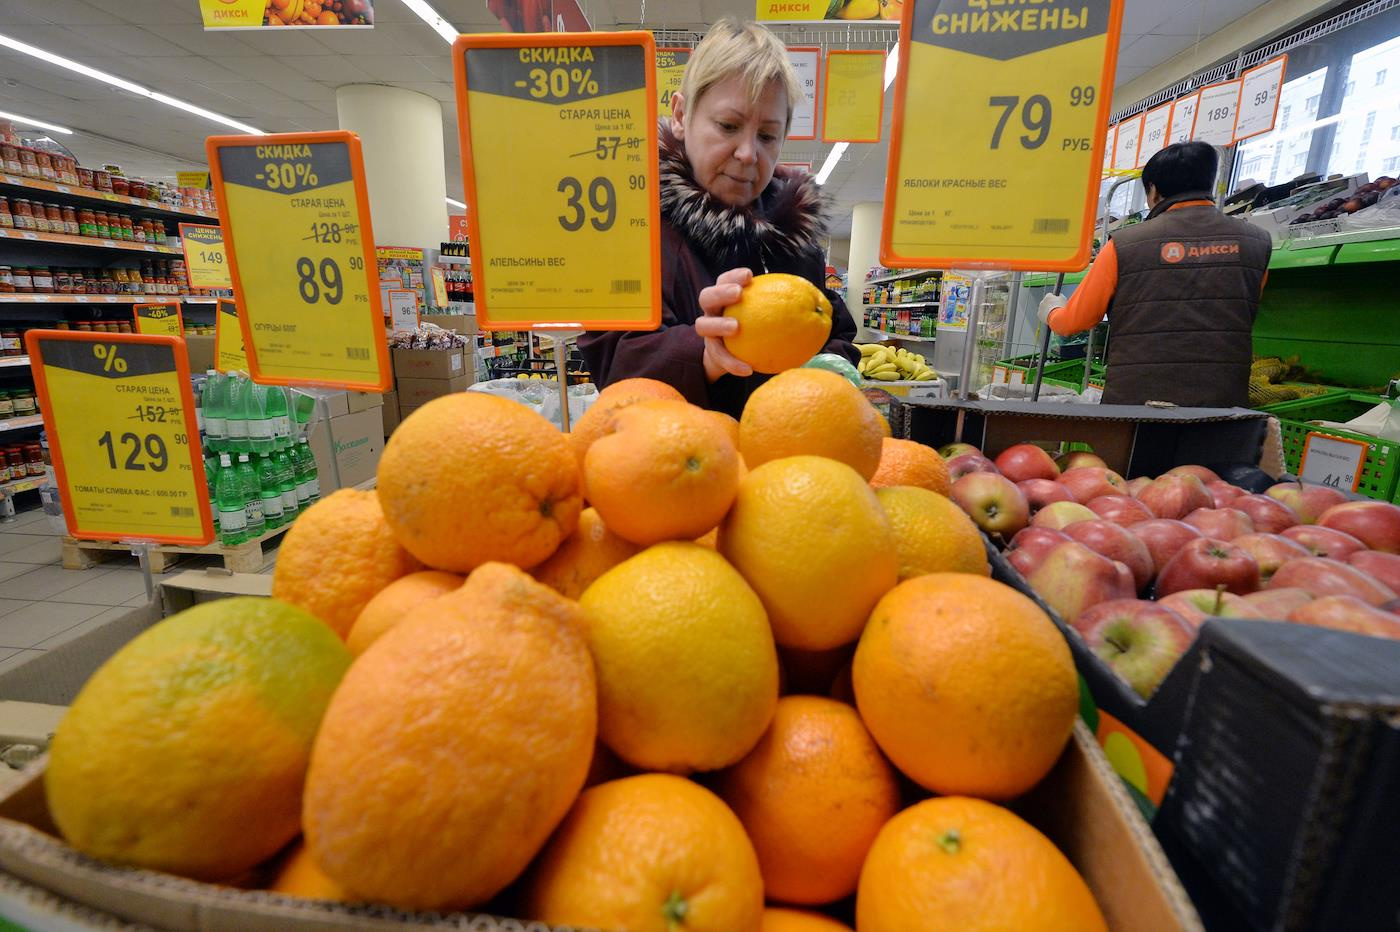 Апельсины против древесины. Чем Египет кормит и меняется с Россией